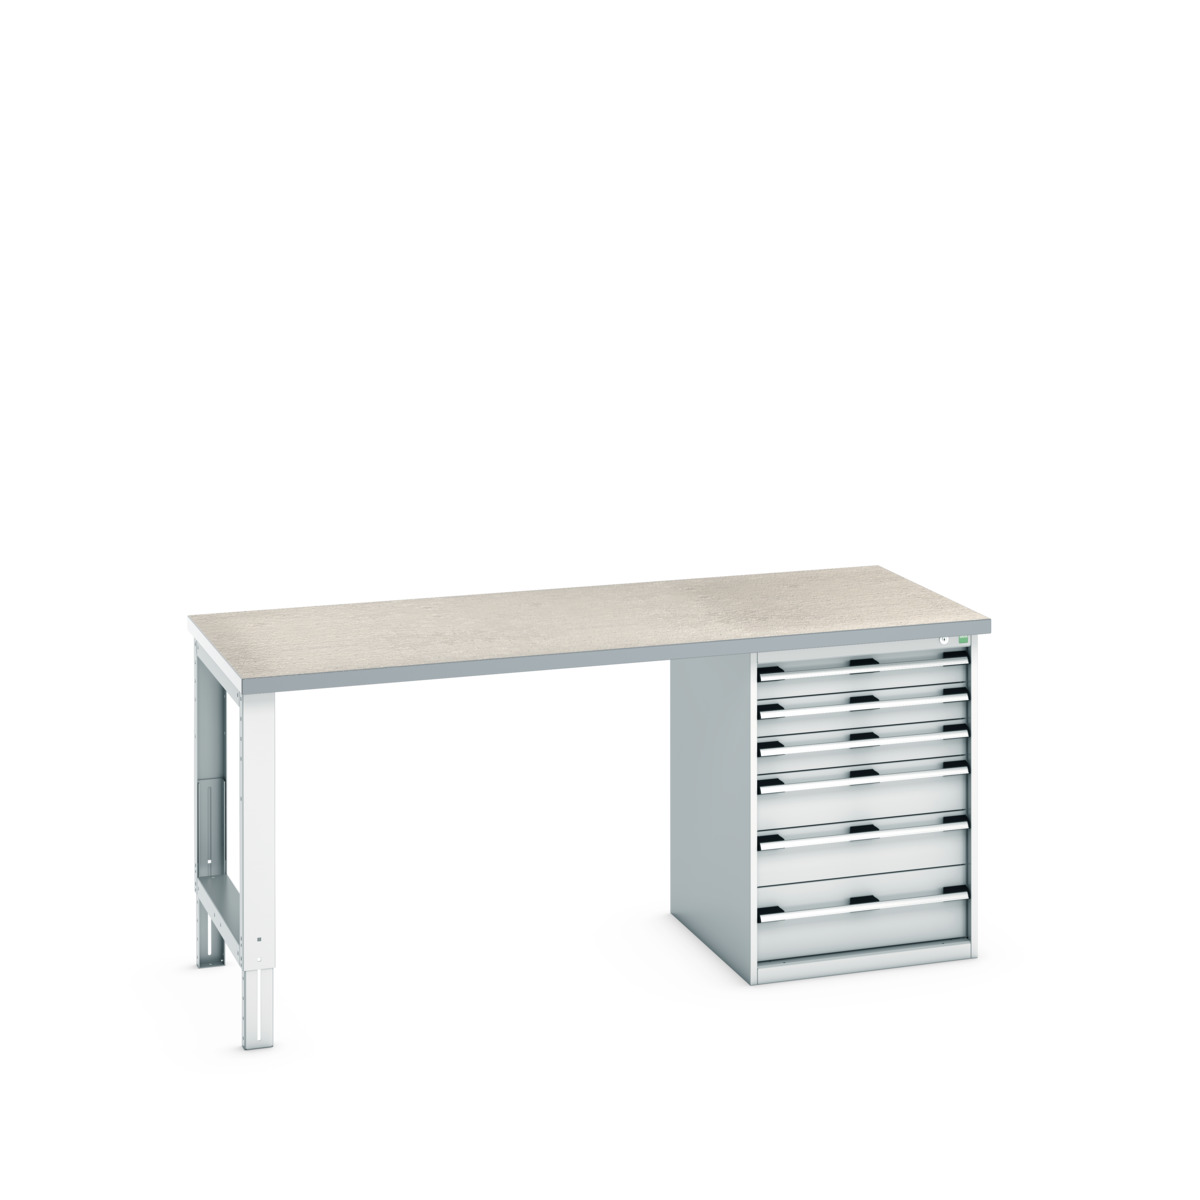 41004120.16V - cubio pedestal bench (lino)